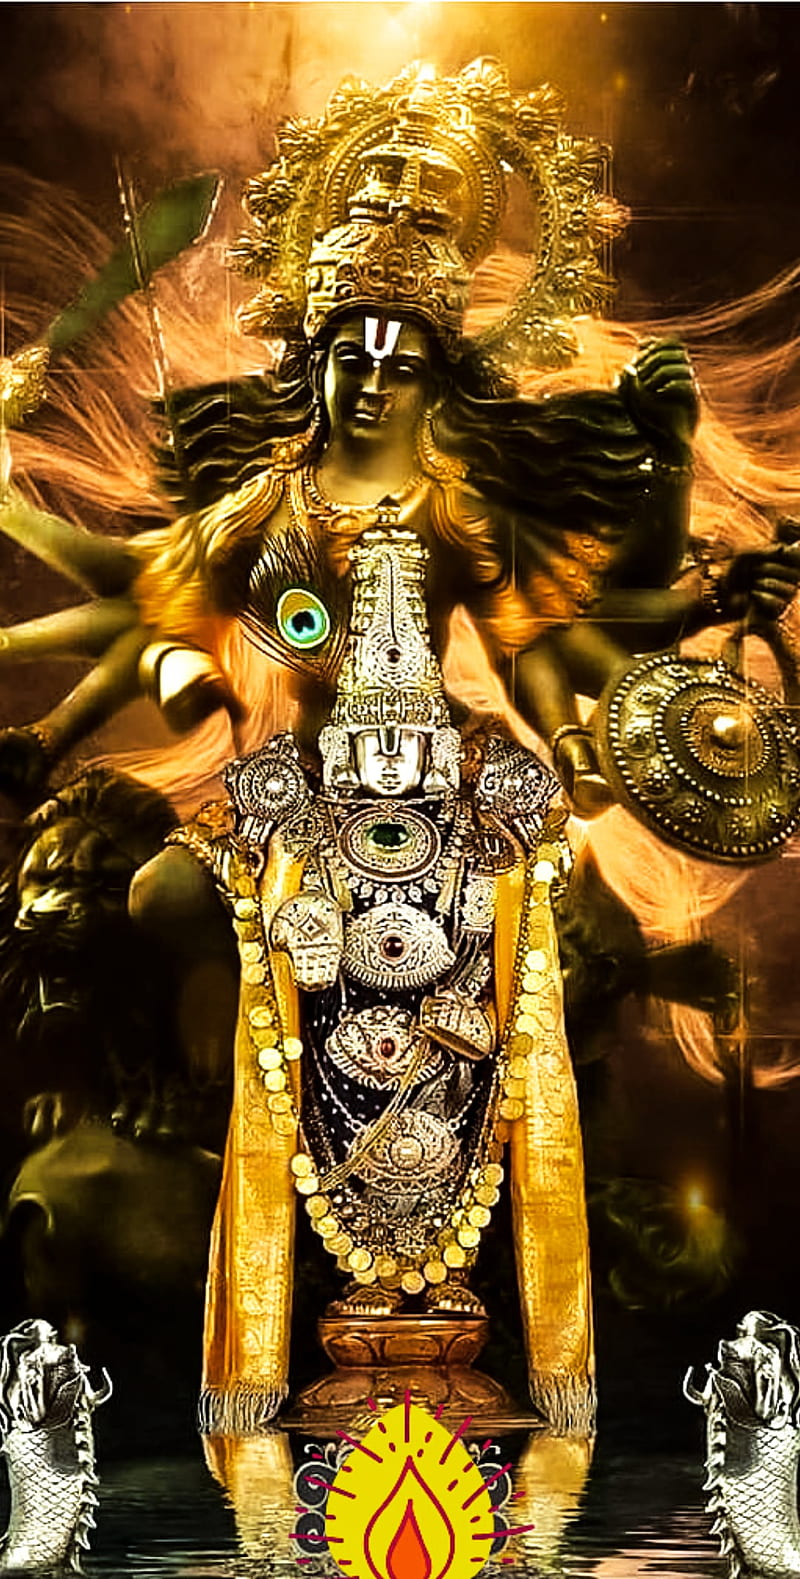 The Dark Mother Goddess Kali anime character wallpaper God Goddess Durga  art goddess kali 1080P wallpap  Mother goddess Character wallpaper  Durga goddess